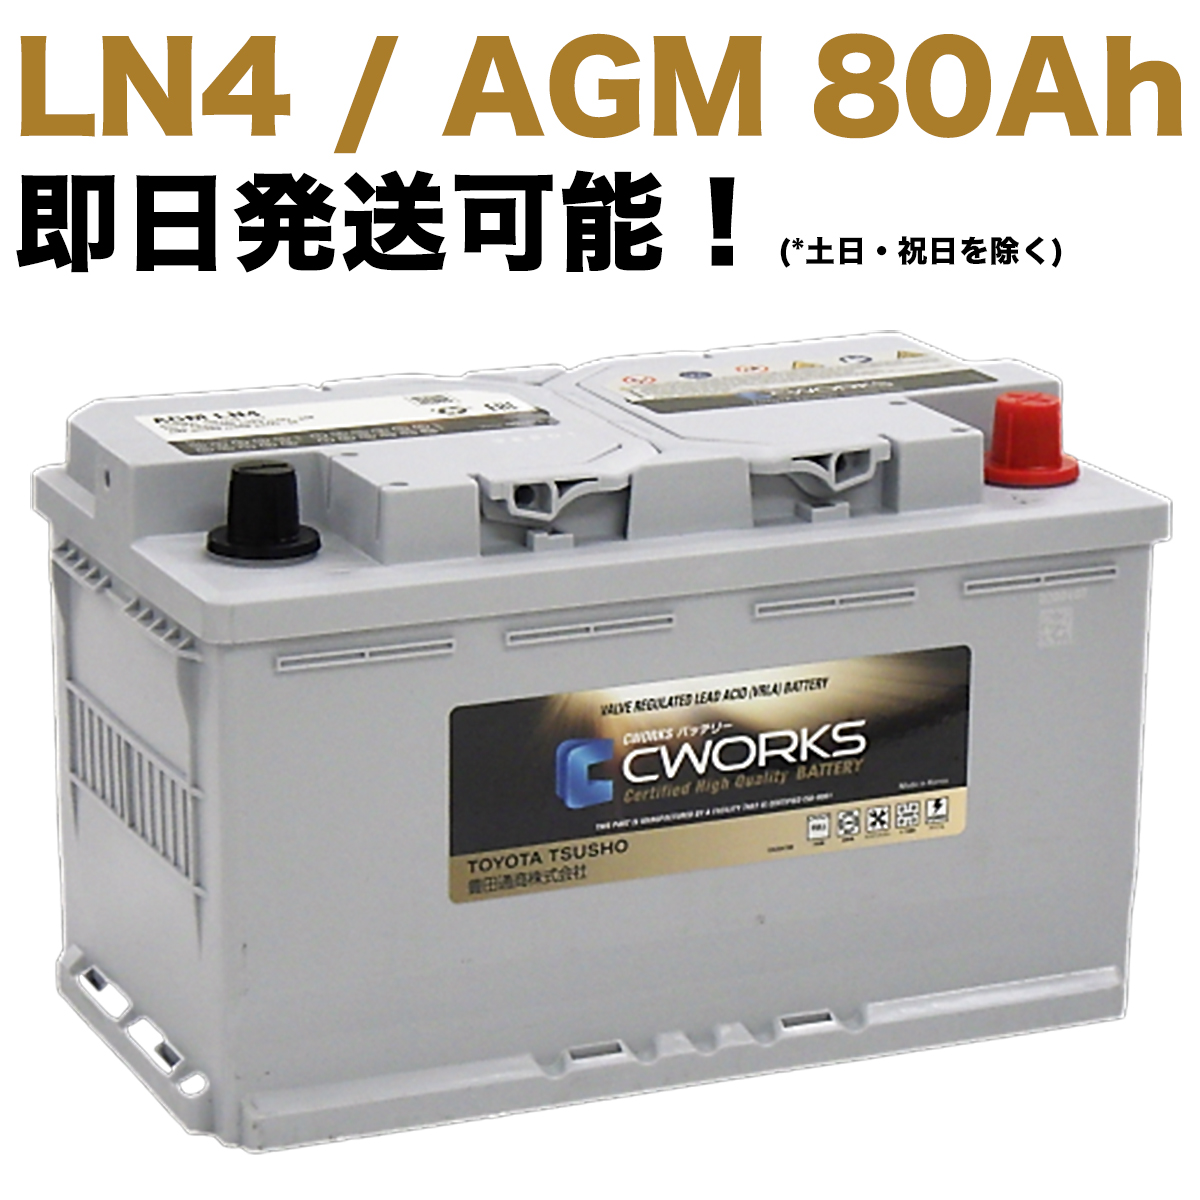 【保証付】新品 バッテリー L4 AGM 80Ah メルセデス ベンツ W463 G350 FDA-463346 Gクラス ゲレンデ A001982810828 A0009822108 LN4 CWORKS 580901084｜e-benzparts